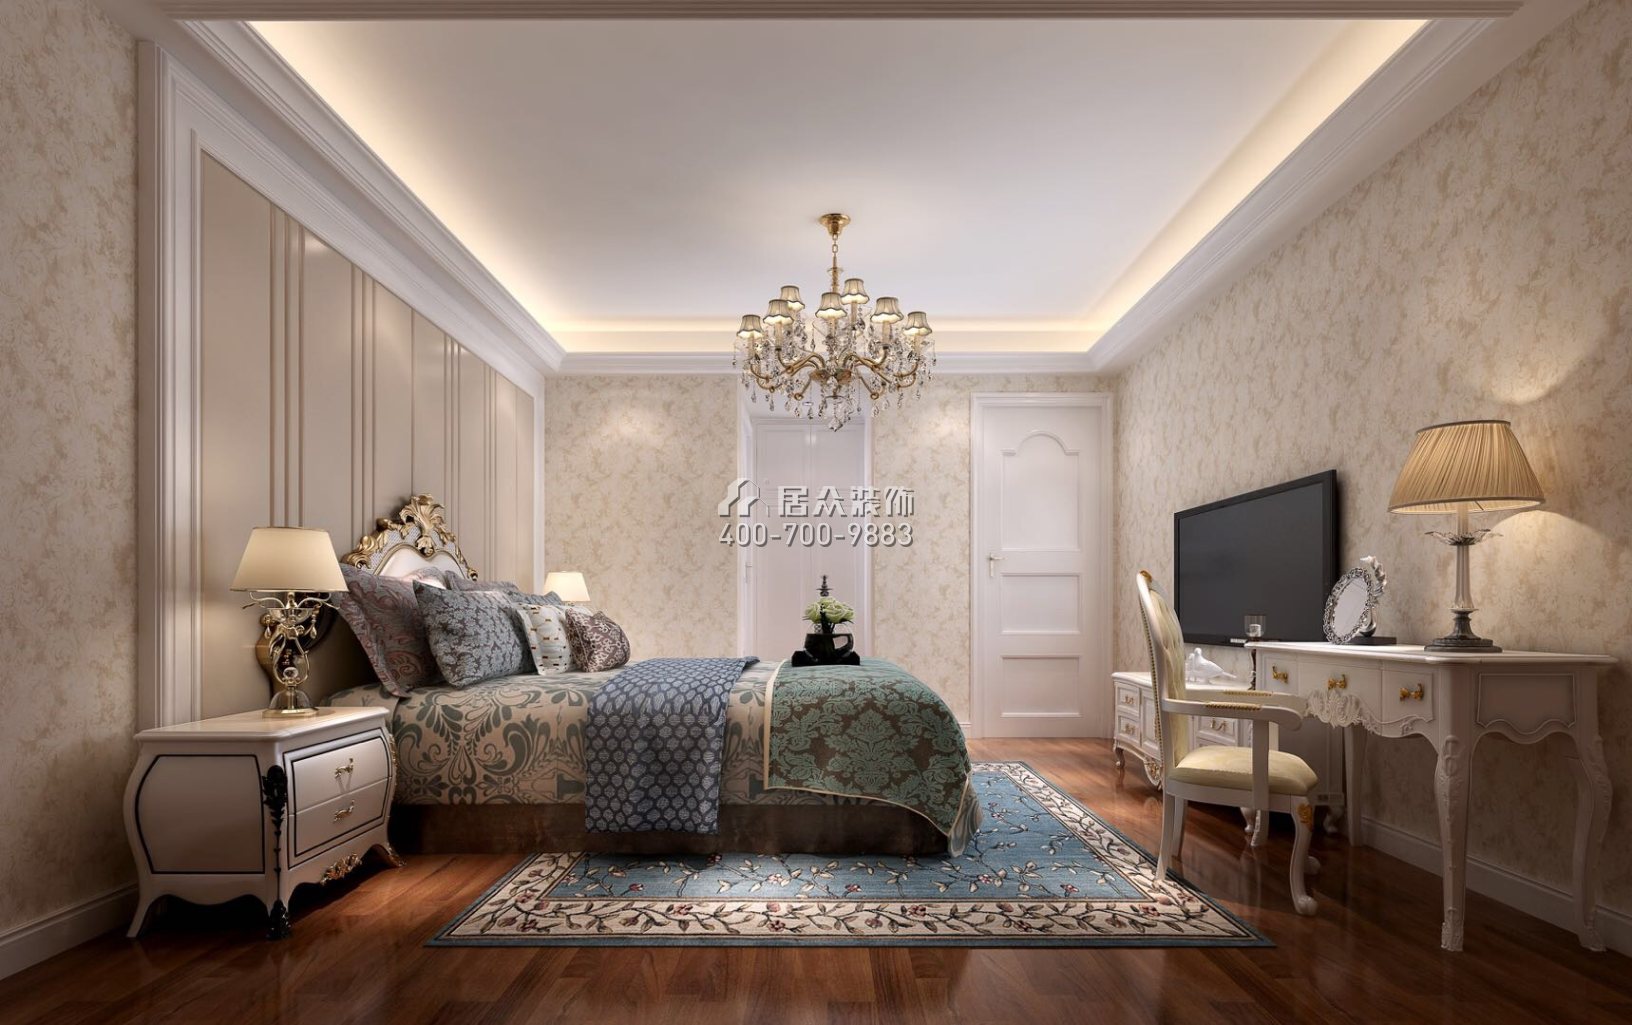 江湾一品175平方米欧式风格平层户型卧室装修效果图